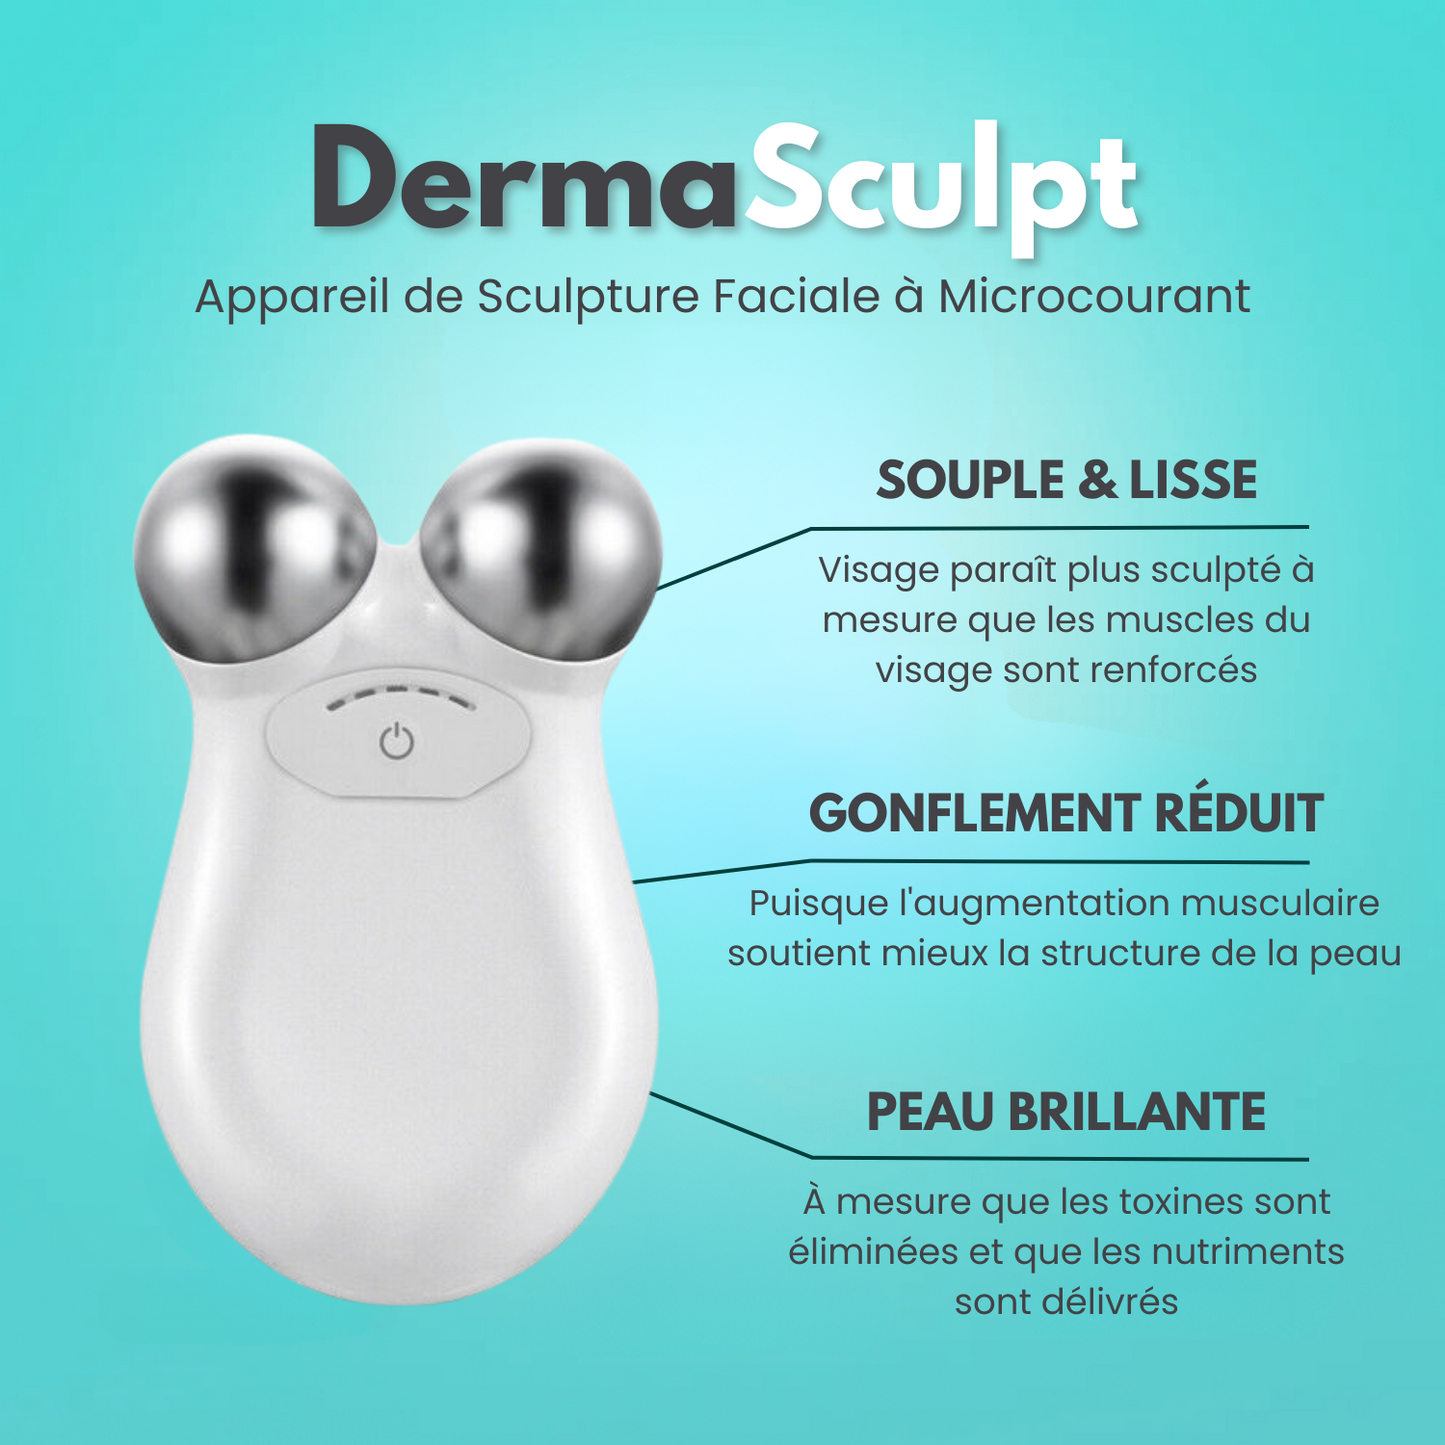 DermaSculpt™ Appareil de Sculpture Faciale à Microcourant